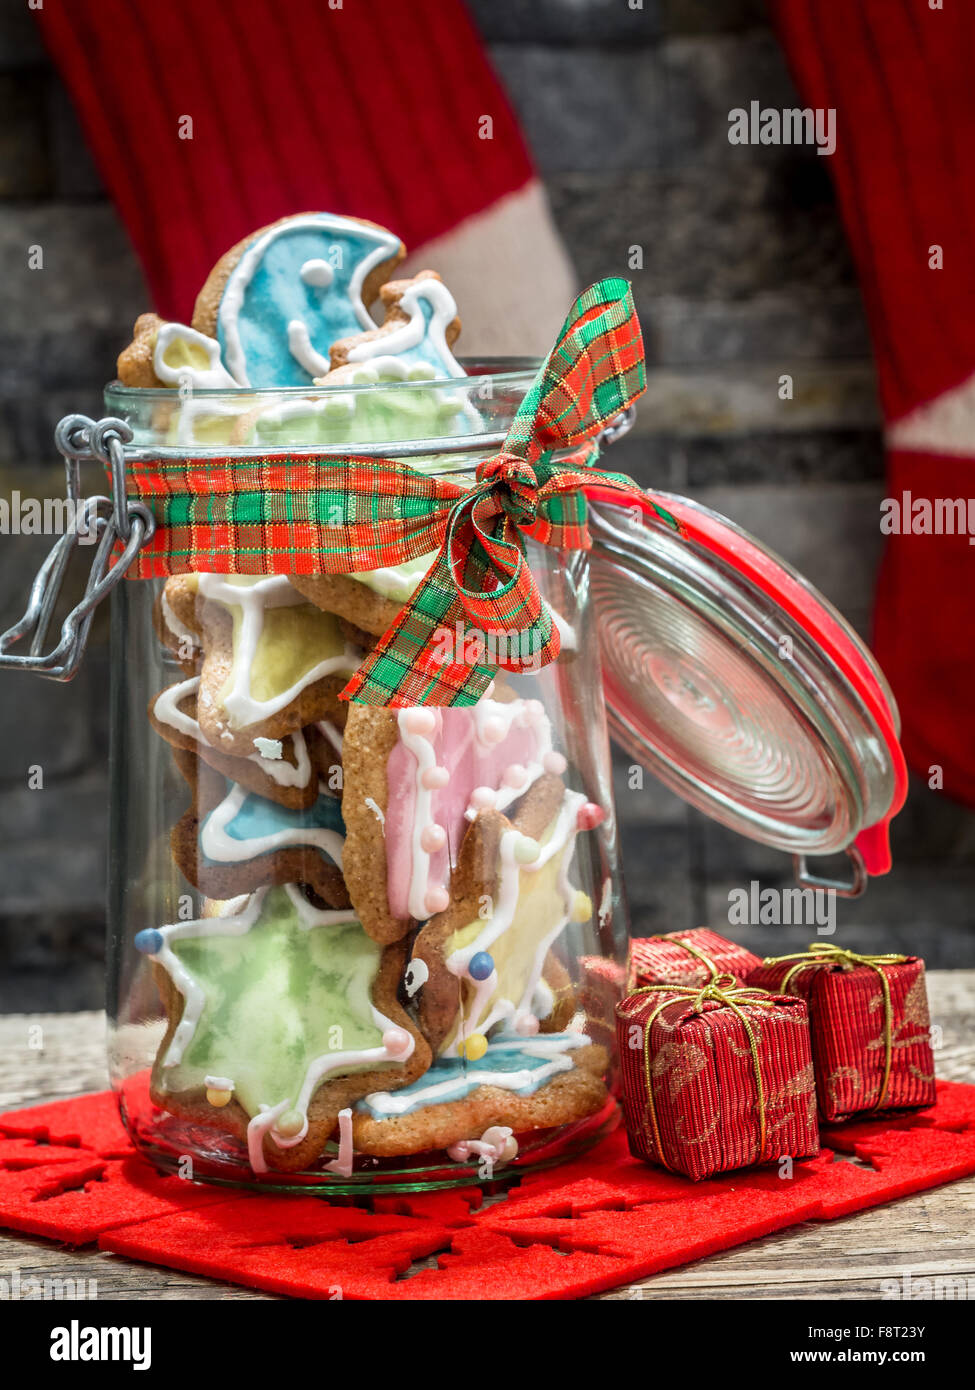 Assorted Christmas gingerbread cookies con coloridos guinda en tarro de cristal en la mesa Foto de stock